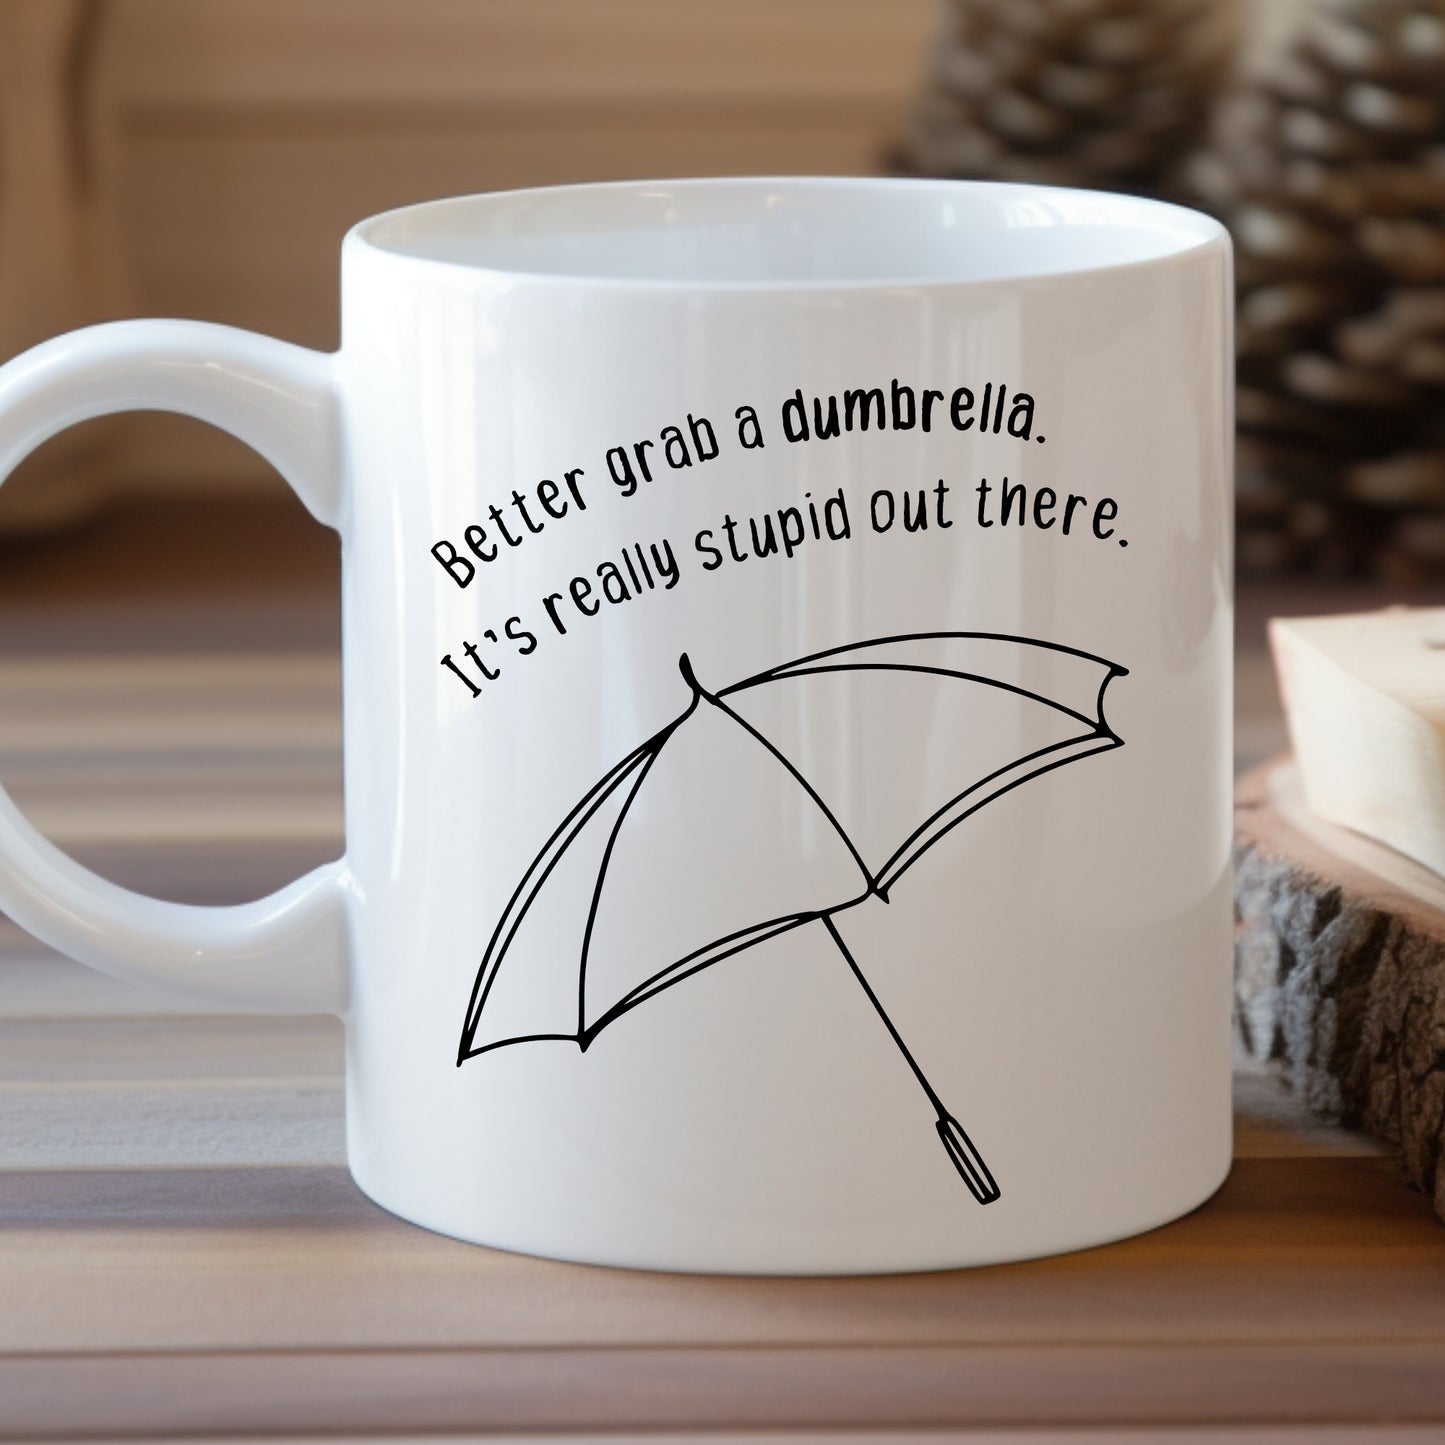 Better Grab a Dumbrella... Mug